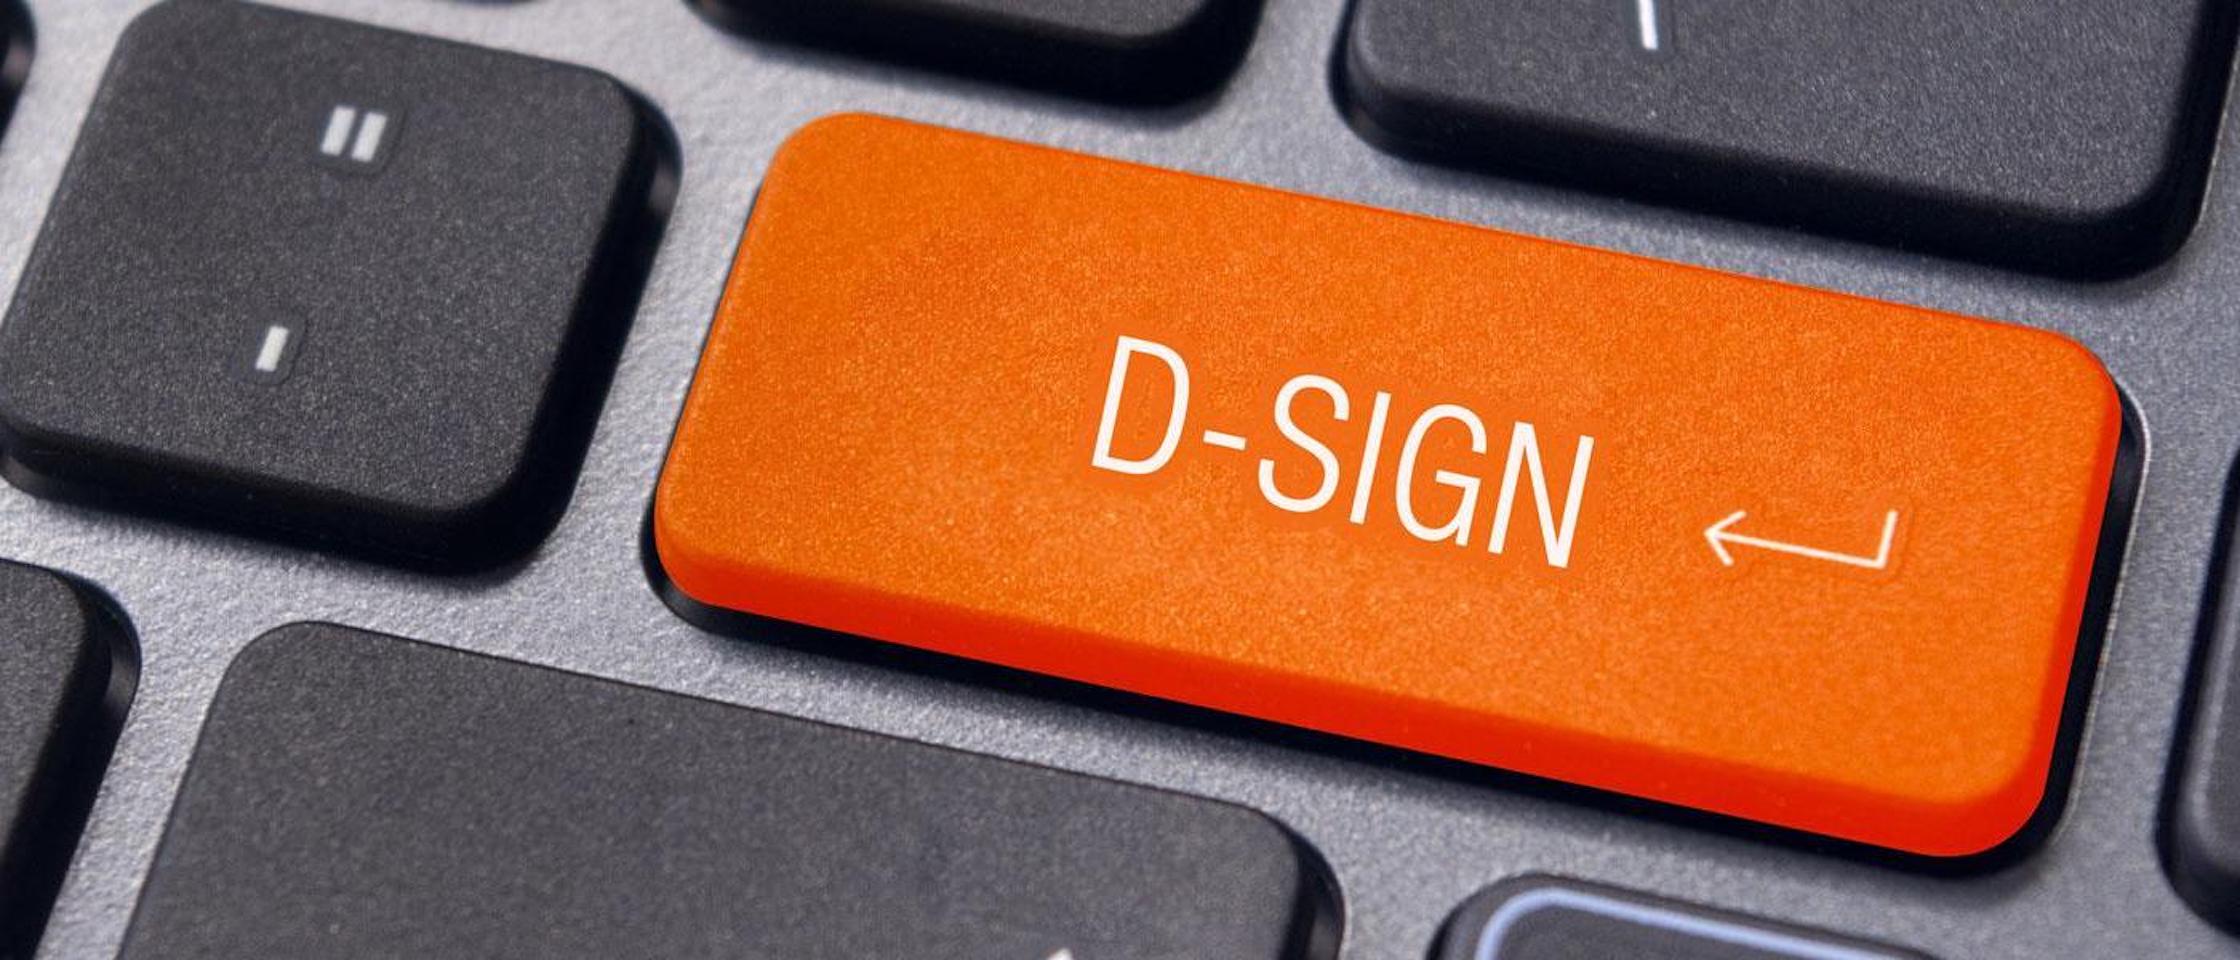 Gestione delle firme elettroniche con D-Sign